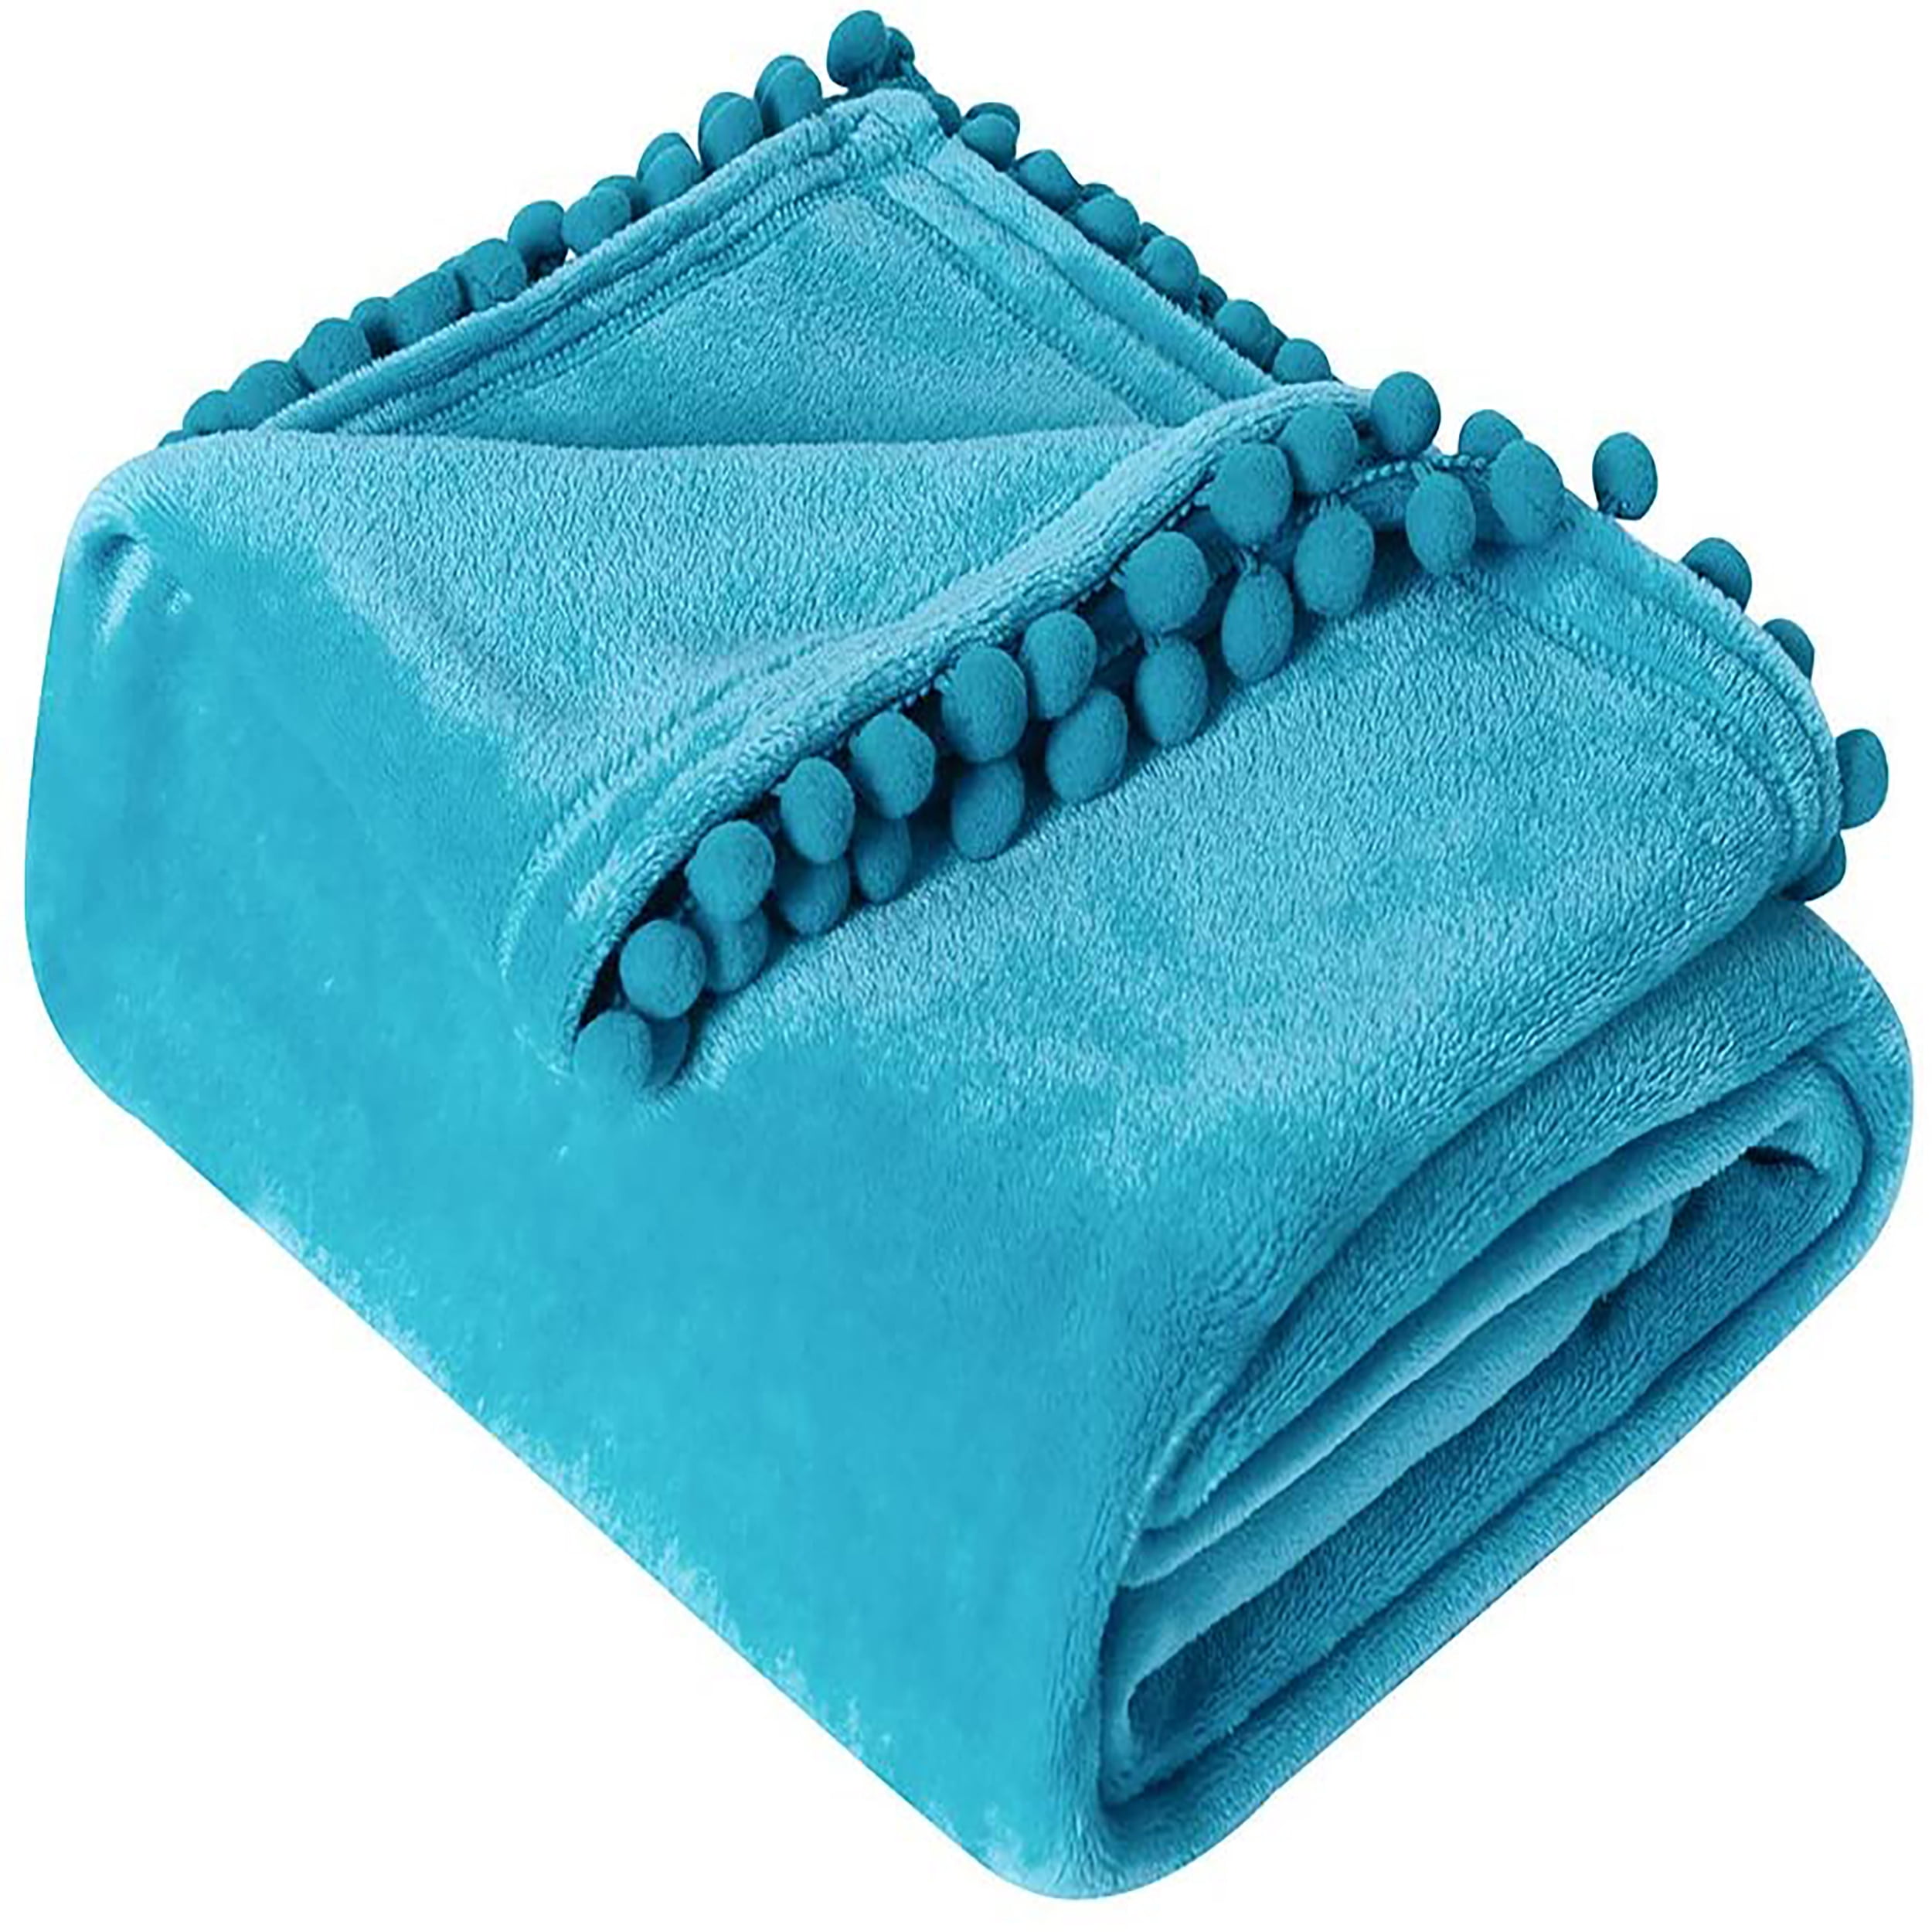 Flannel Fleece Luxury Blanket Twin Size Lightweight Cozy Plush Microfiber Solid Blanket Soft Warm Cozy Kids Teen Blanket Blue, 60x80inch-Twin 